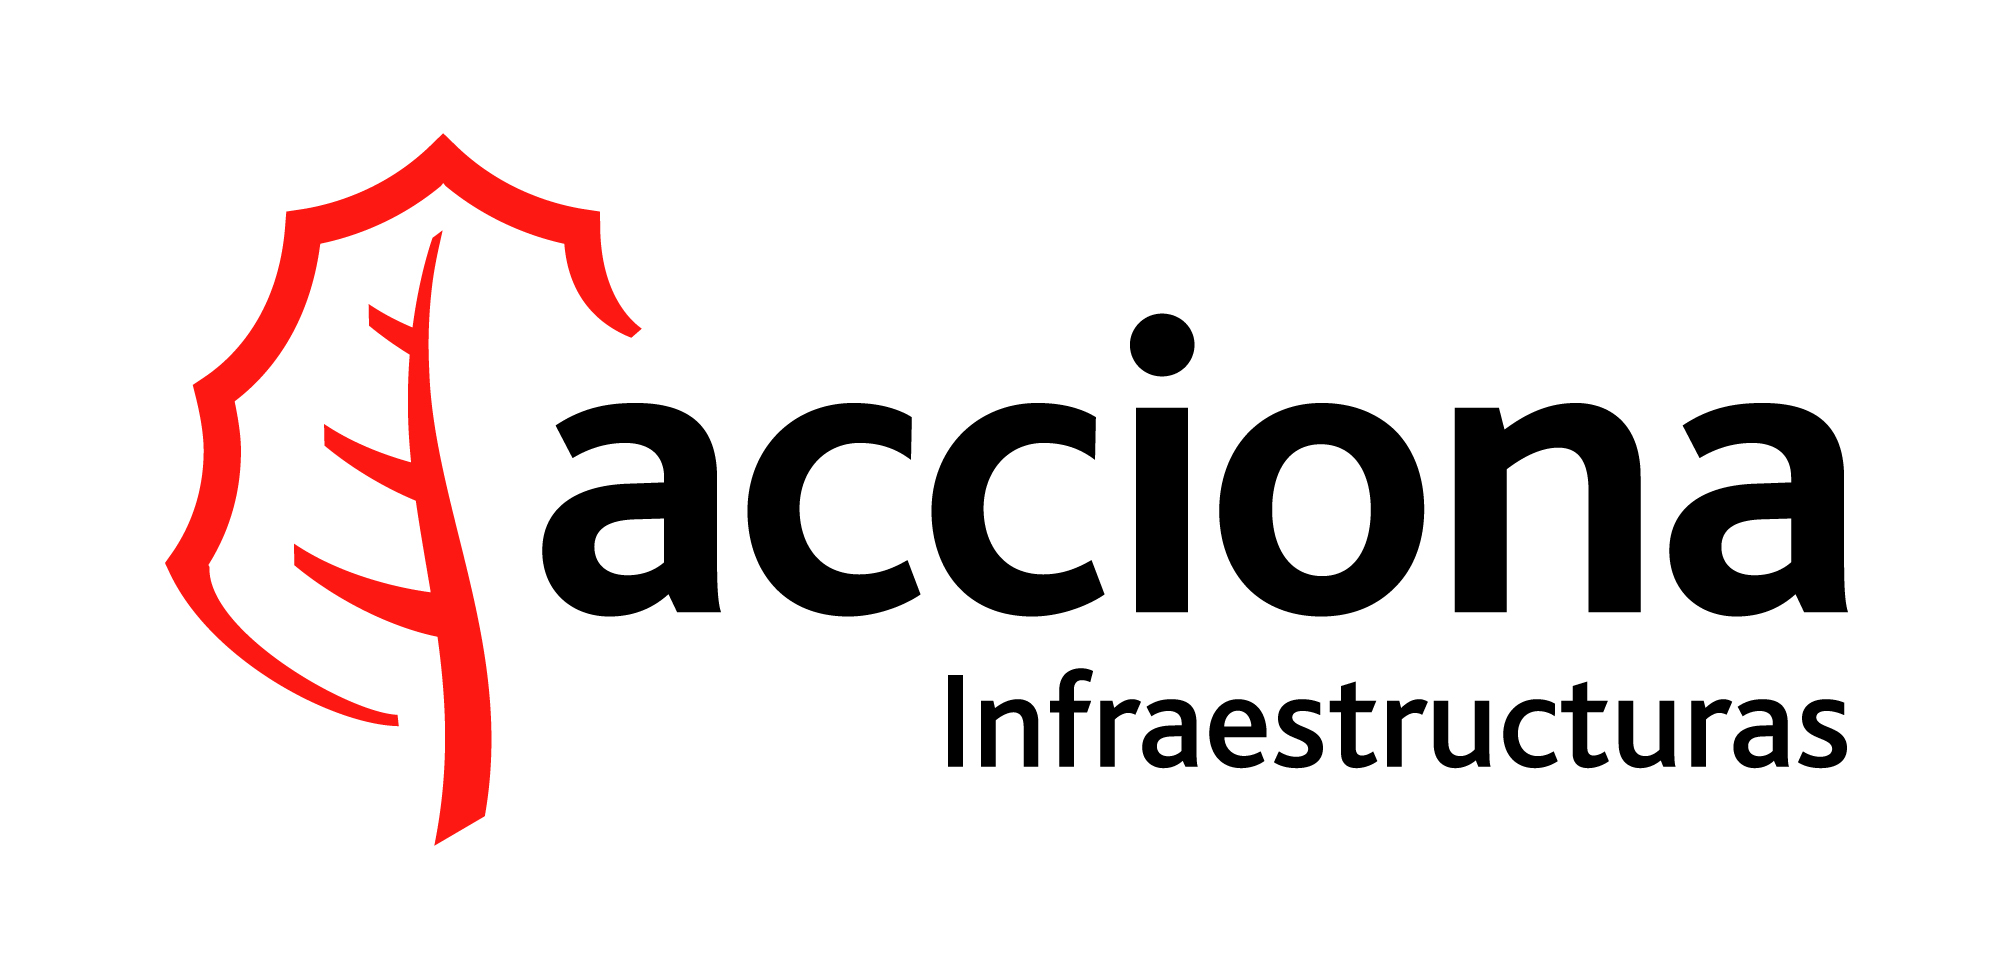 Imagen de la empresa Acciona Infraestructuras a la que se le ofrecen los descuentos